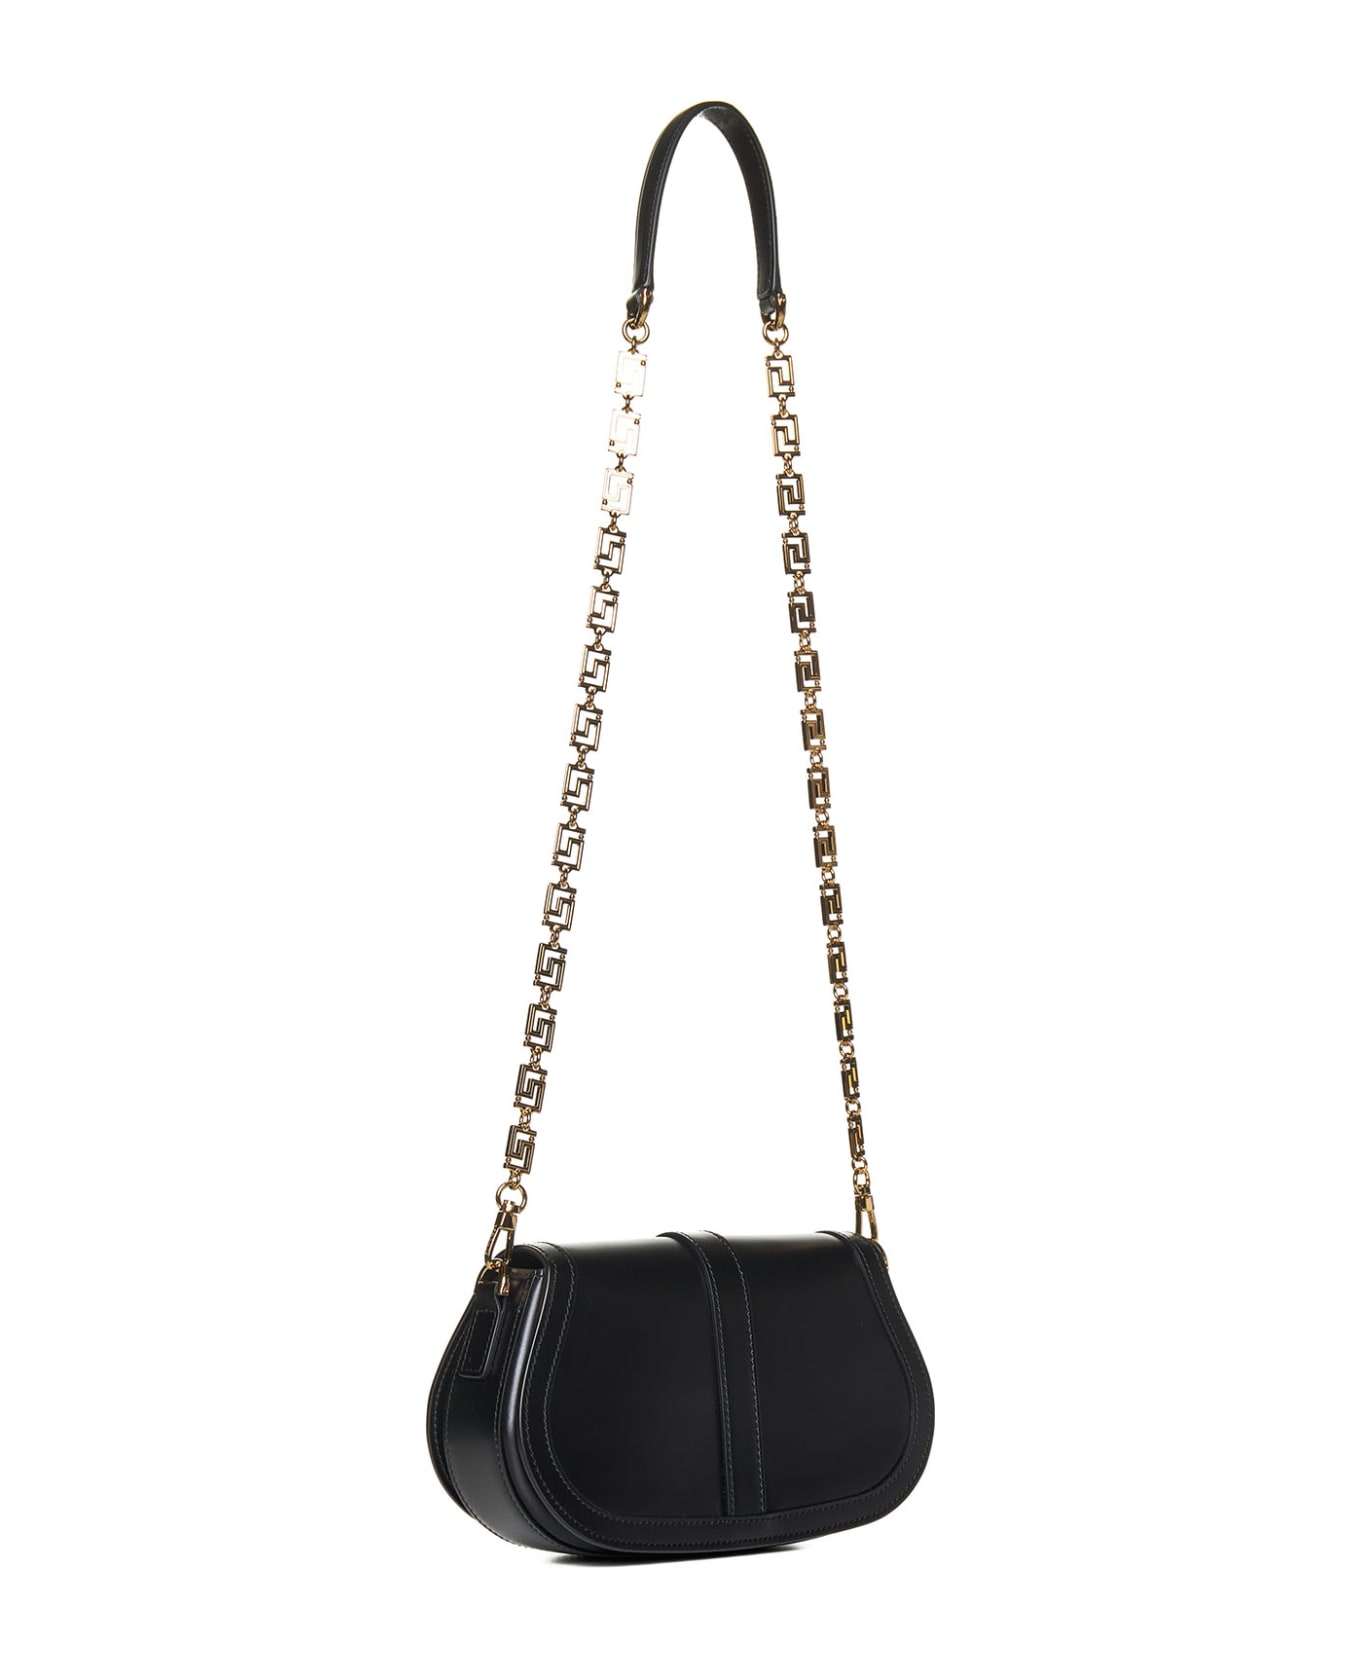 Versace Greca Goddess Shoulder Bag - Black トートバッグ